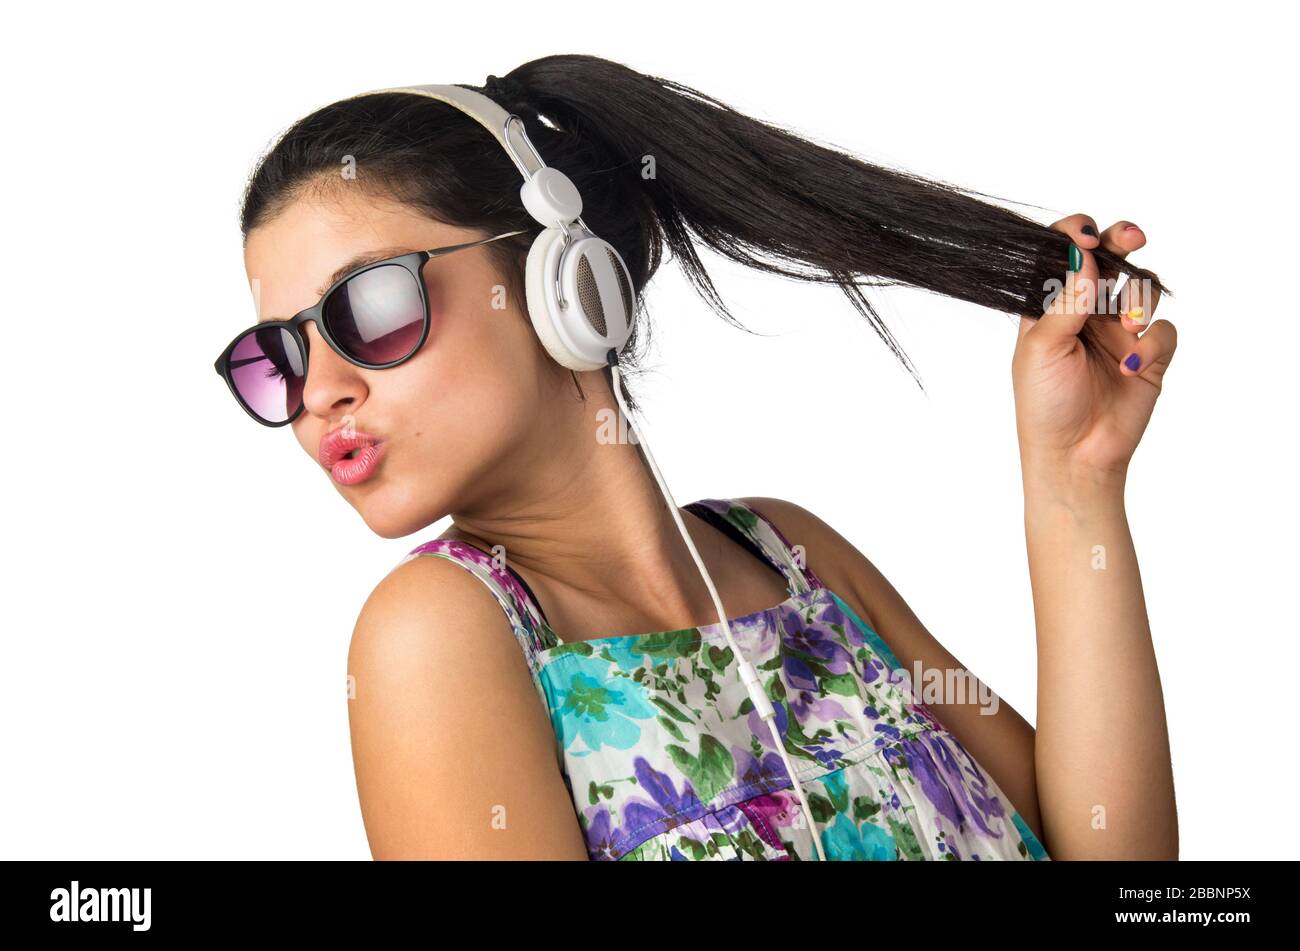 Bonita niña con auriculares y gafas de sol bailando y sosteniendo su cabello Foto de stock